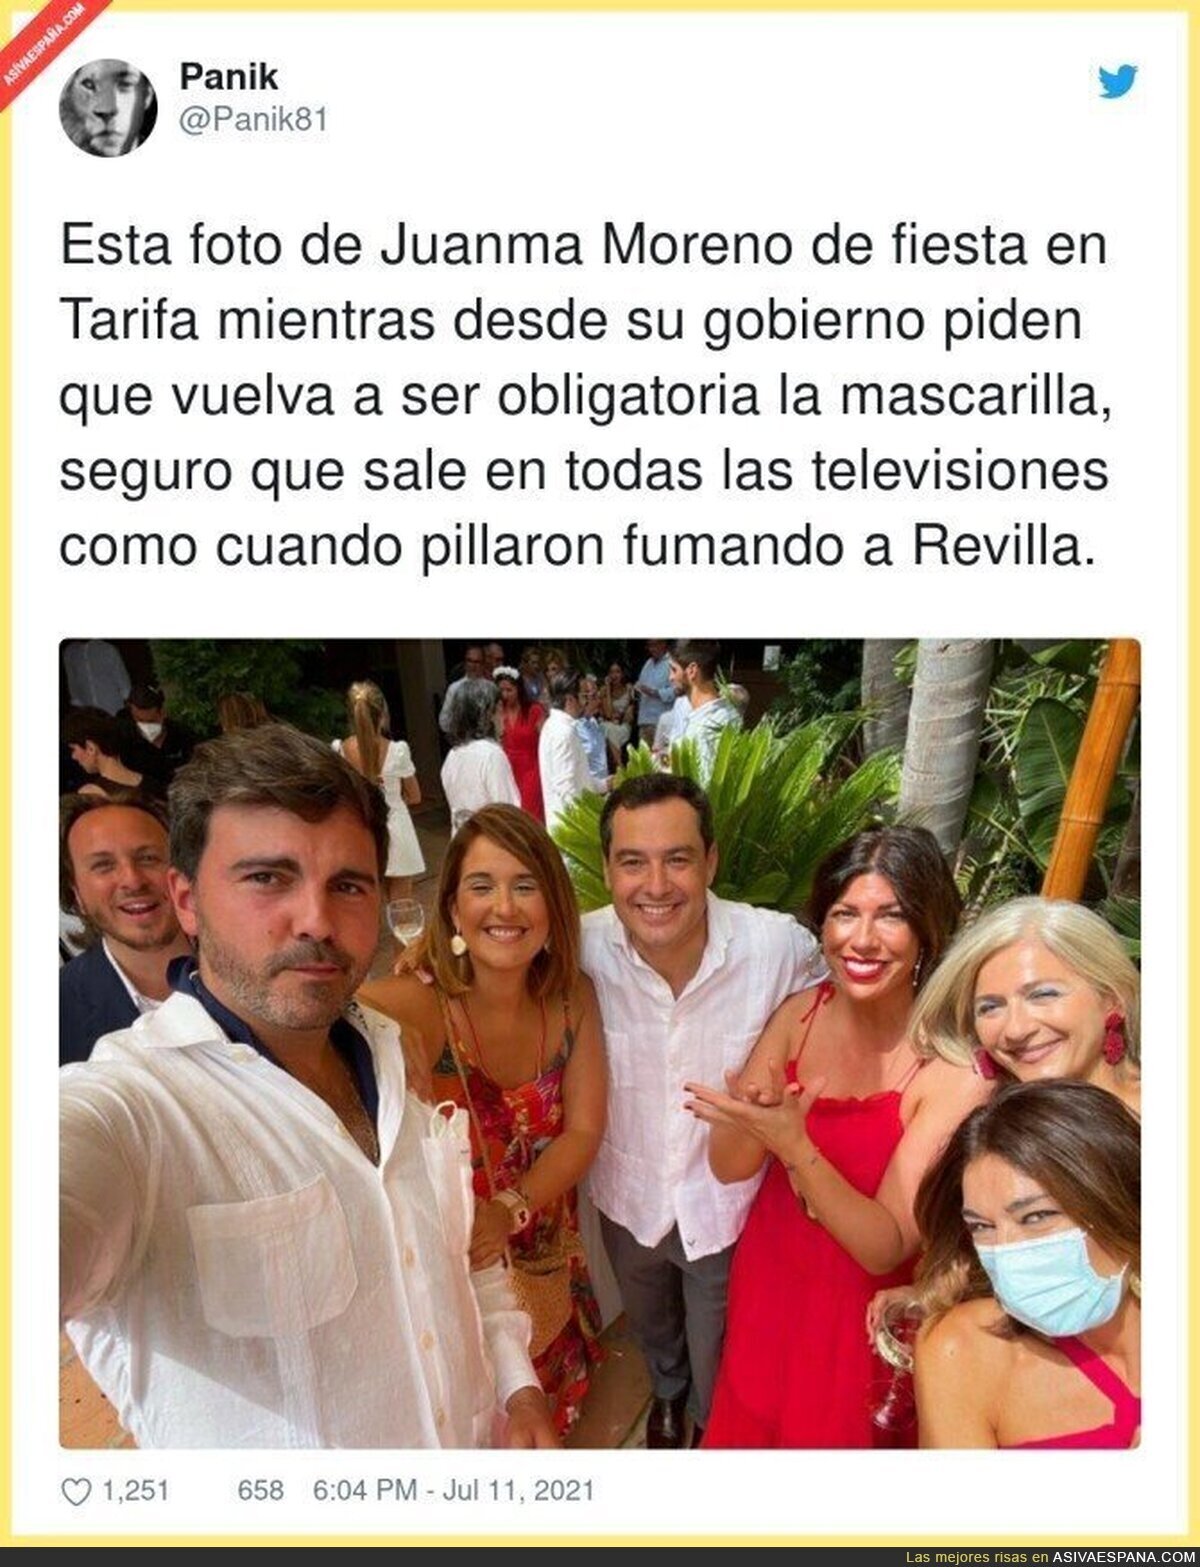 La poca vergüenza de Juanma Moreno...